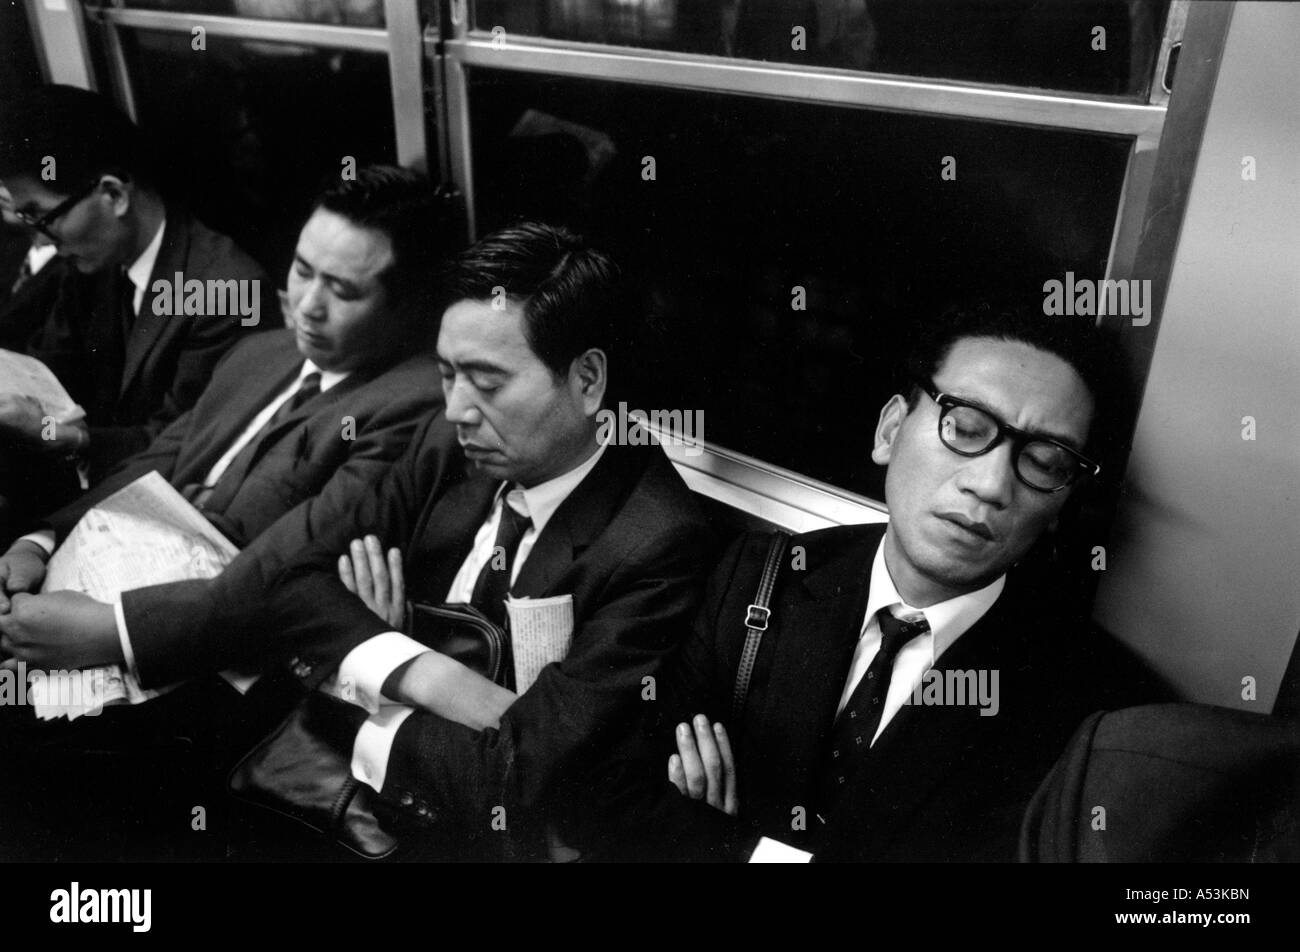 Painet ha1240 016 noir et blanc le stress des employés de bureau endormi ride metro home banlieue Tokyo Japon pays nation en développement Banque D'Images